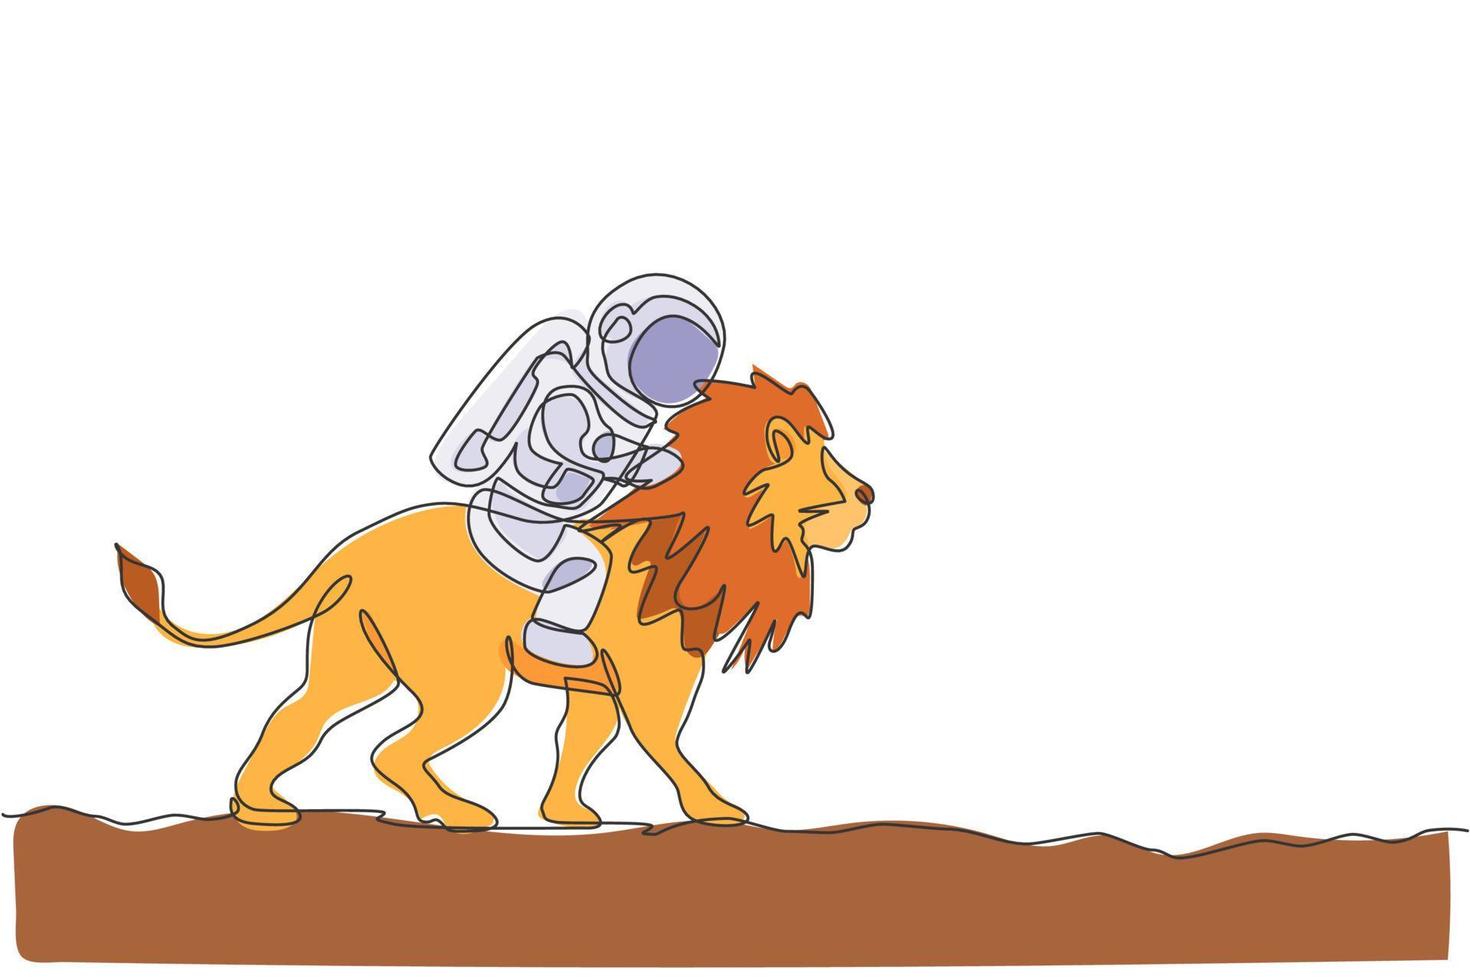 dibujo de línea continua única de cosmonauta con traje espacial montando león, animal salvaje en la superficie de la luna. concepto de viaje de safari de astronauta de fantasía. Ilustración de vector de diseño gráfico de dibujo de una línea de moda